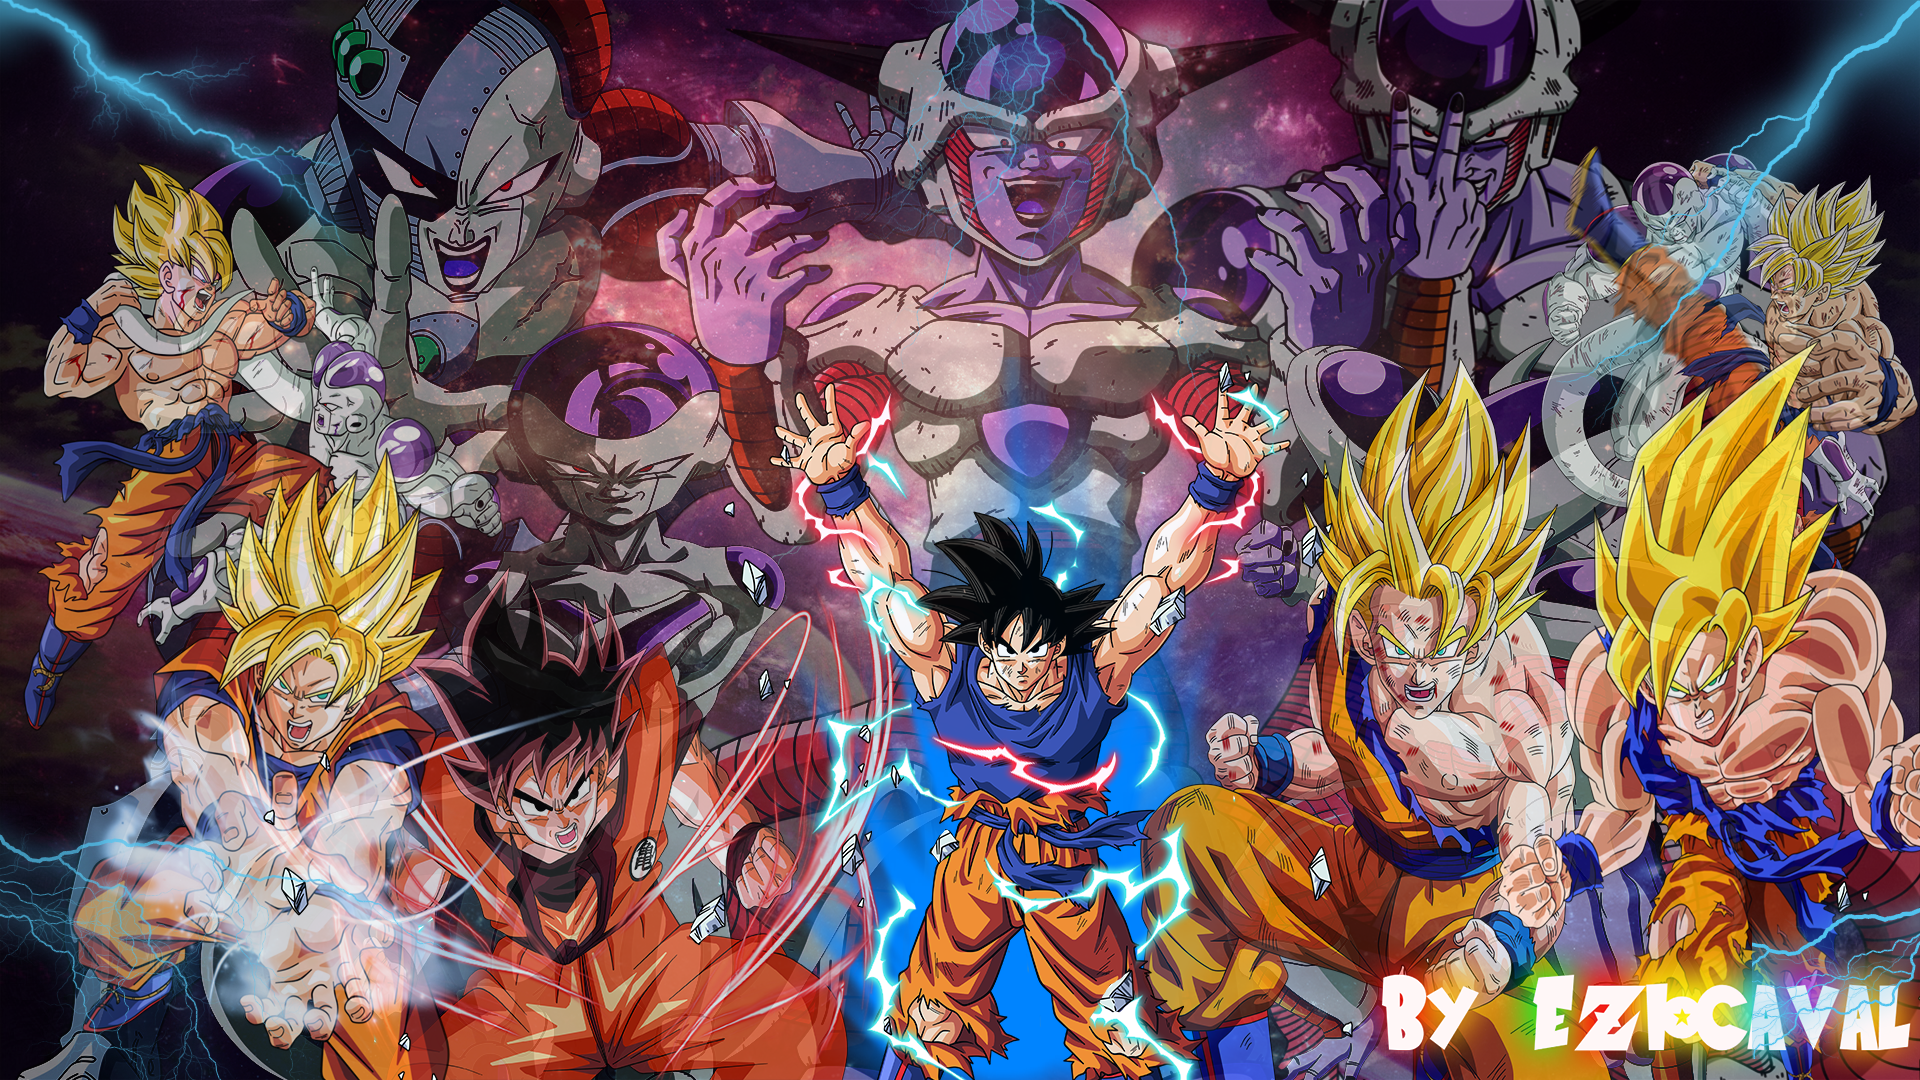 Goku Versus Frieza Wallpapers